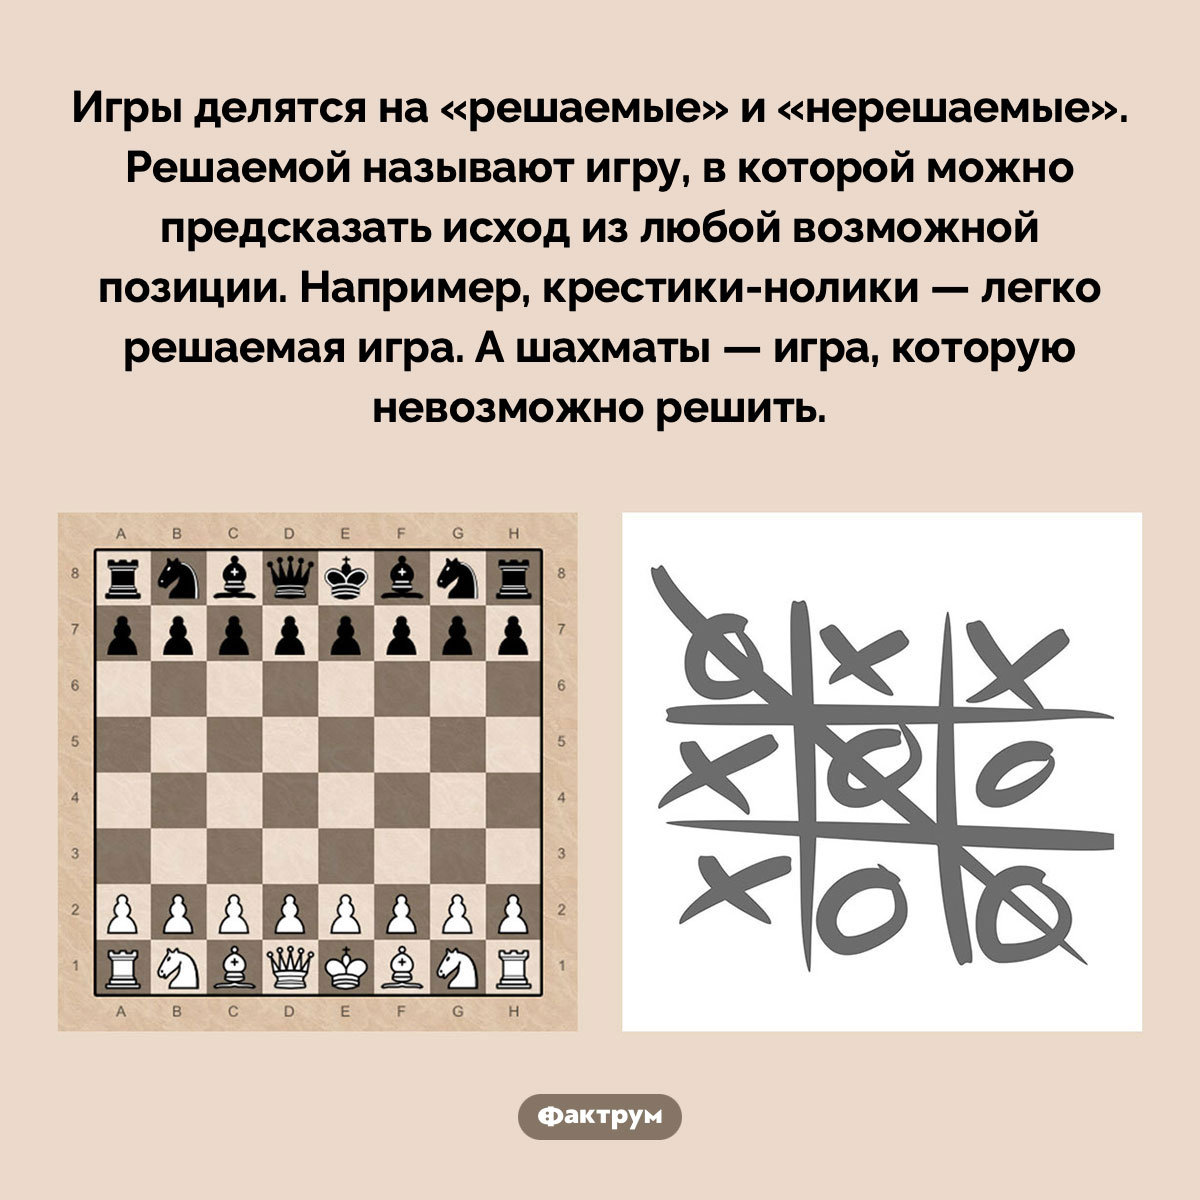 Игры бывают решаемые и нерешаемые. Игры делятся на «решаемые» и «нерешаемые». Решаемой называют игру, в которой можно предсказать исход из любой возможной позиции. Например, крестики-нолики — легко решаемая игра. А шахматы — игра, которую невозможно решить.